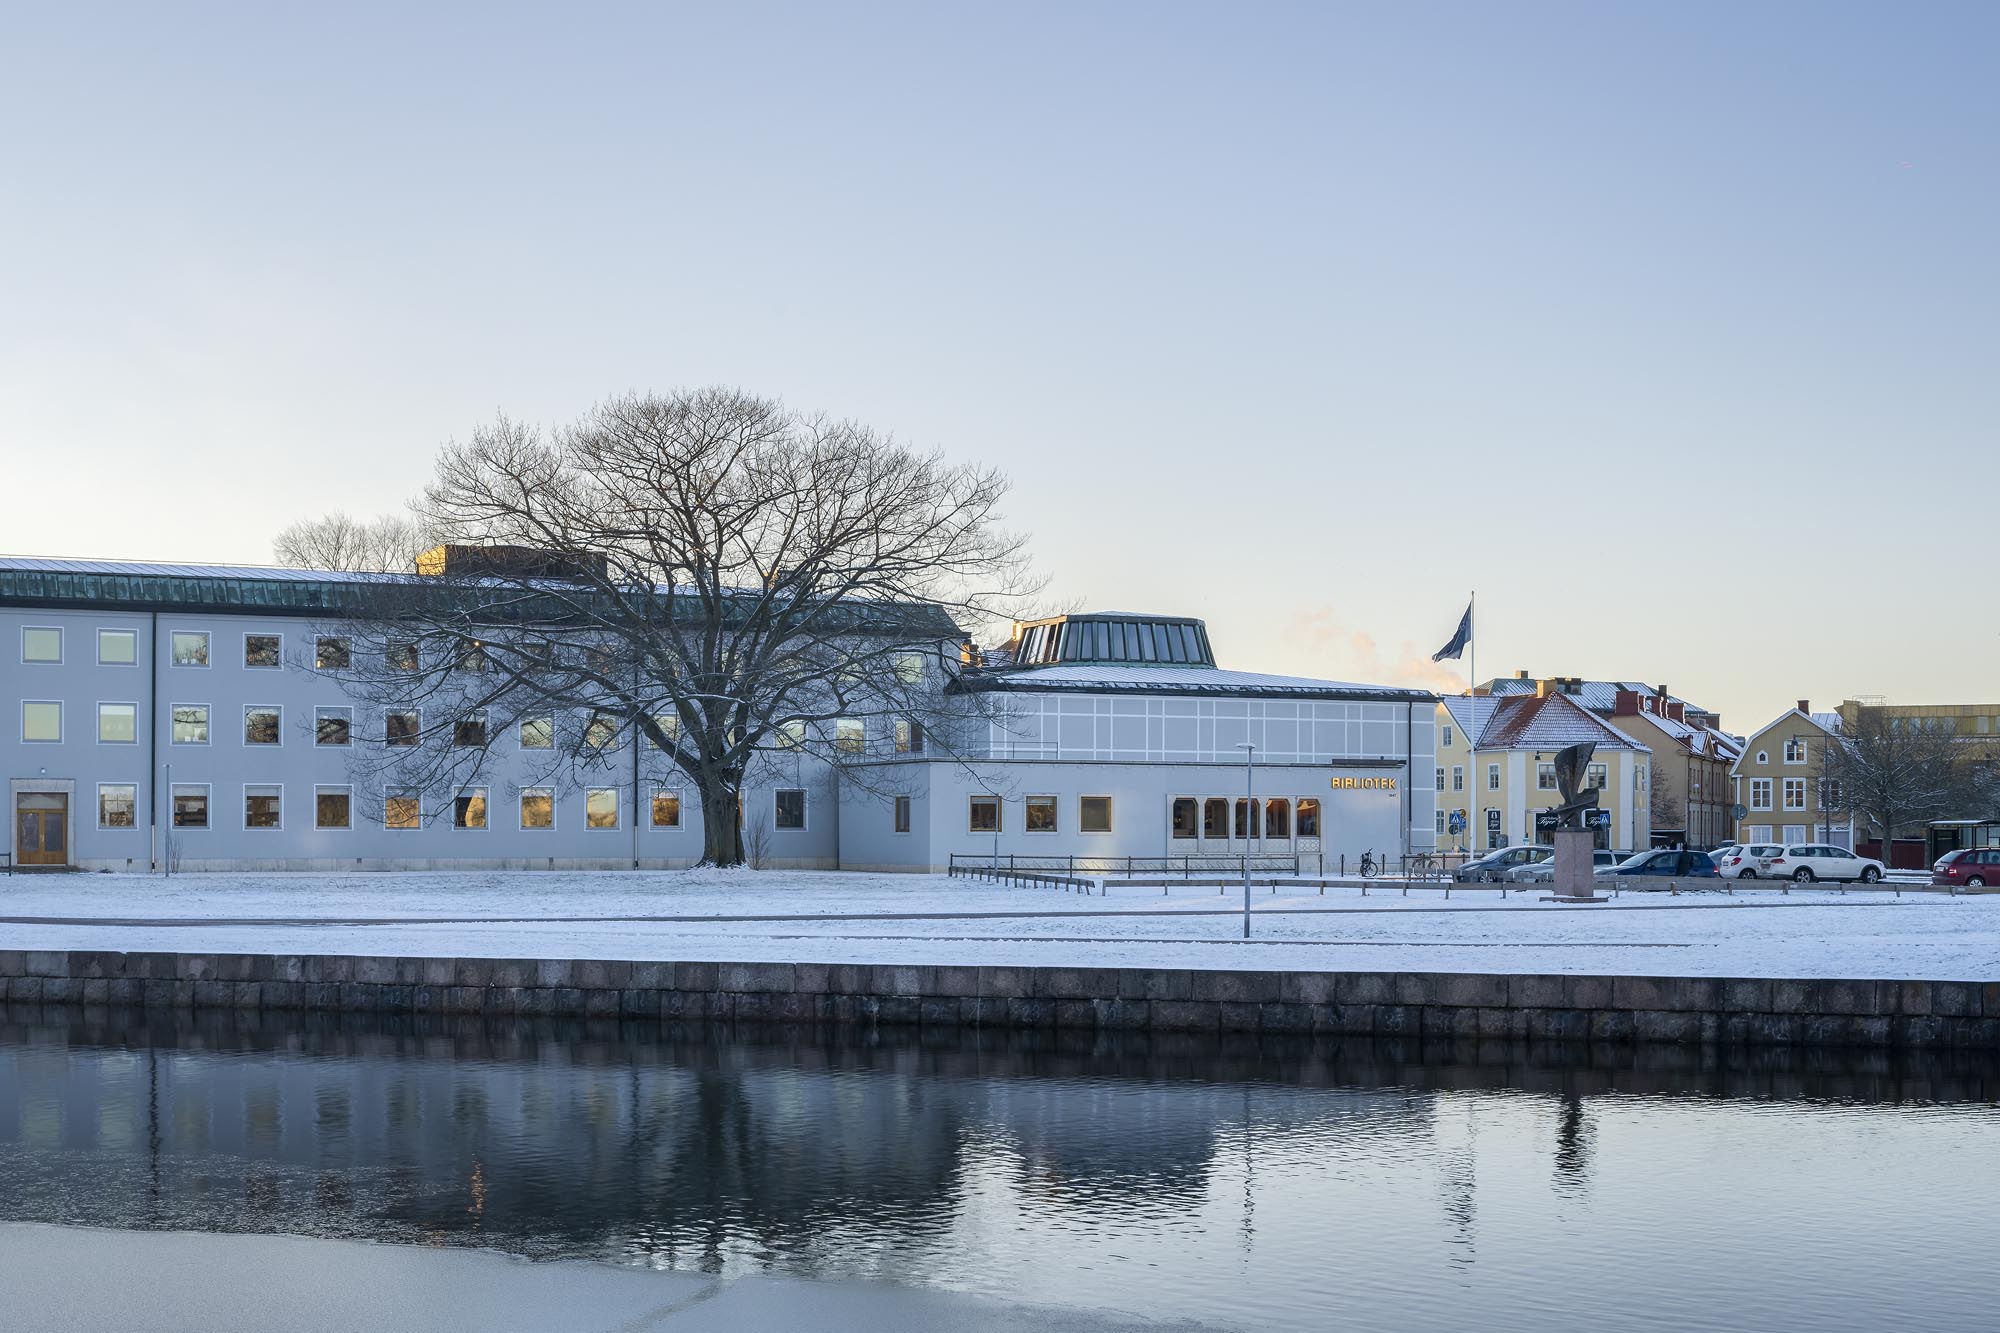 Kalmar City Library